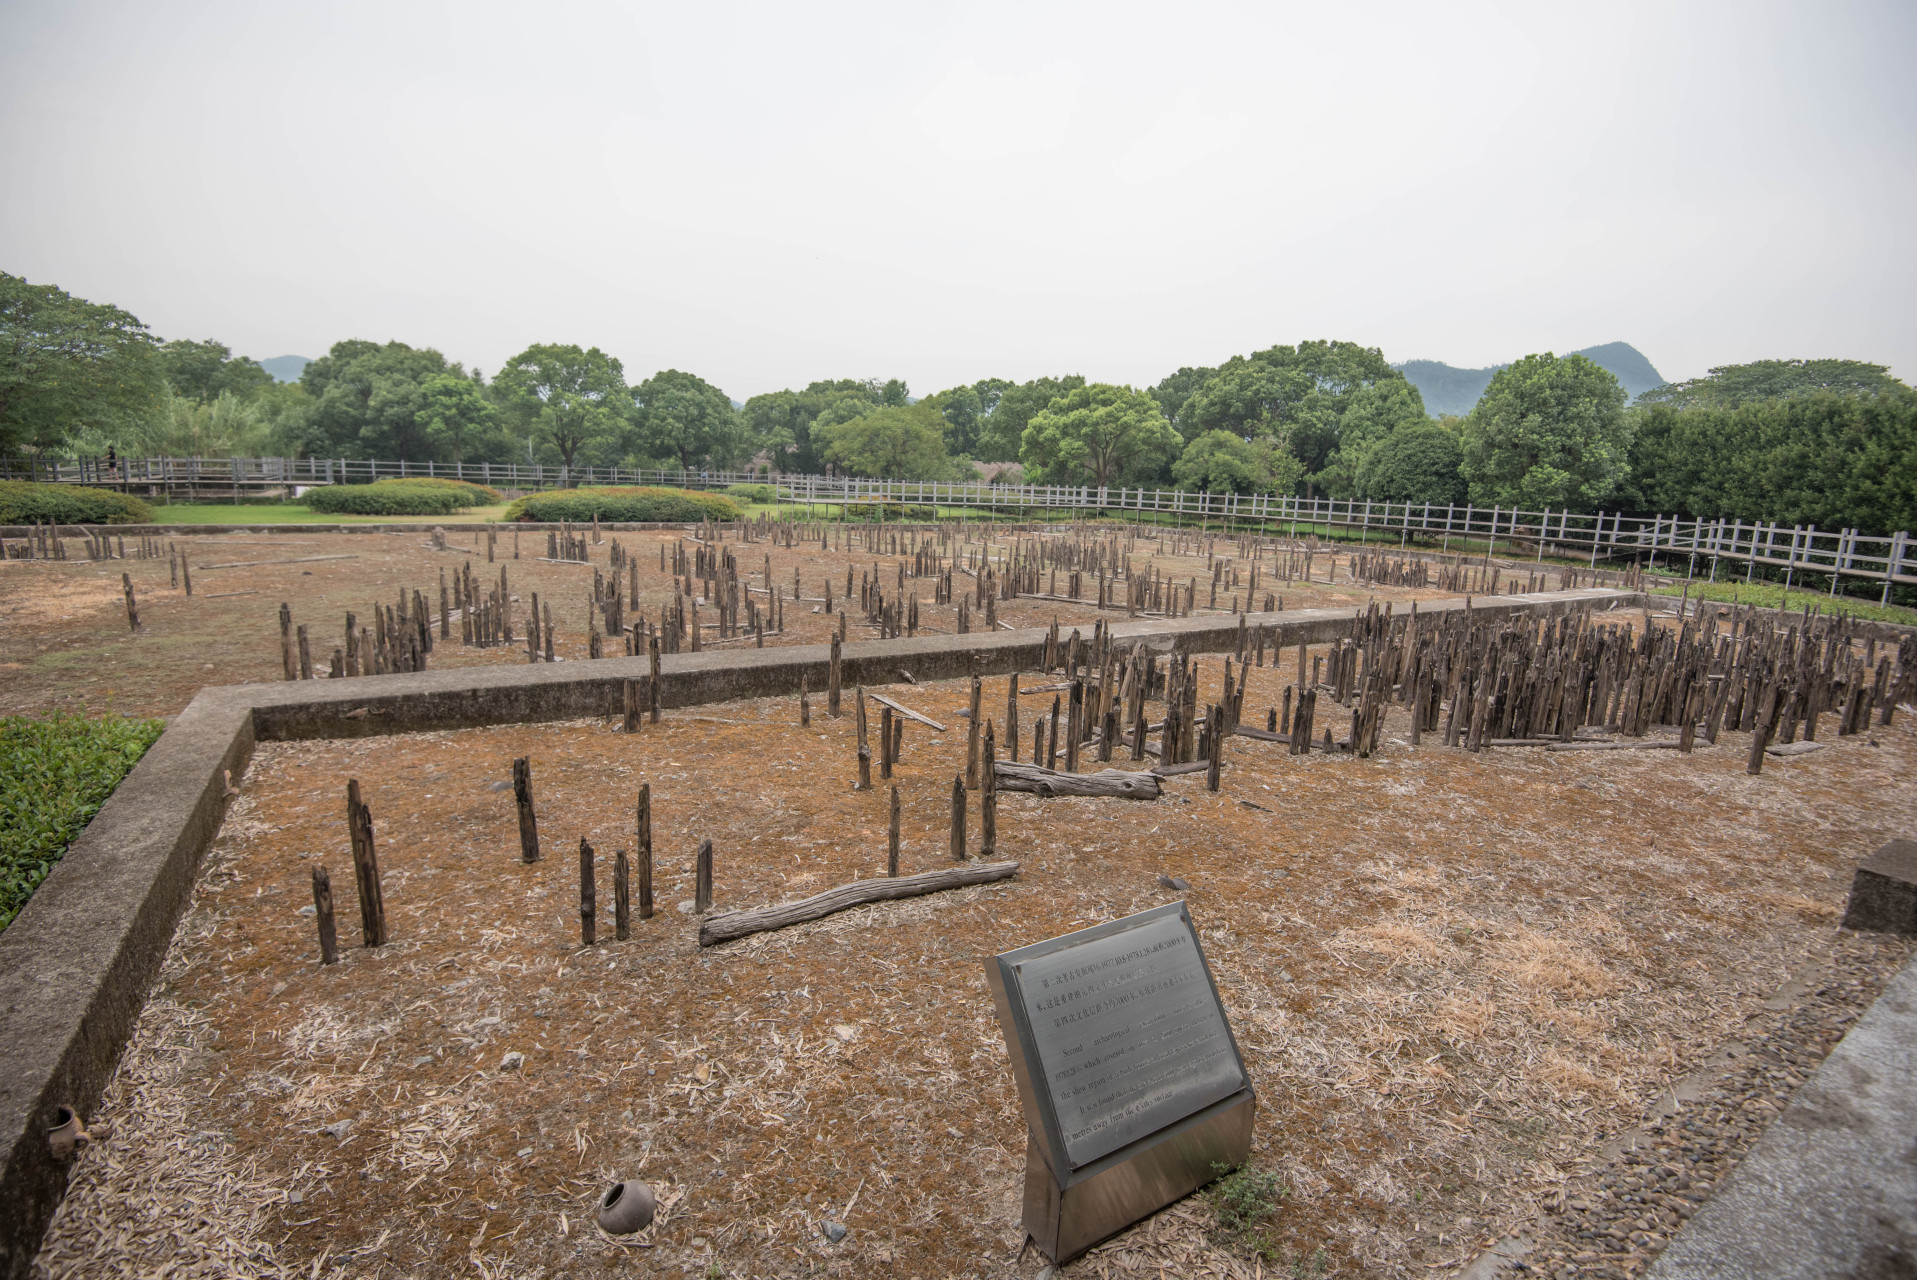 河姆渡遗址位于浙江省余姚市河姆渡镇,属于新石器时代早期,距今约7000